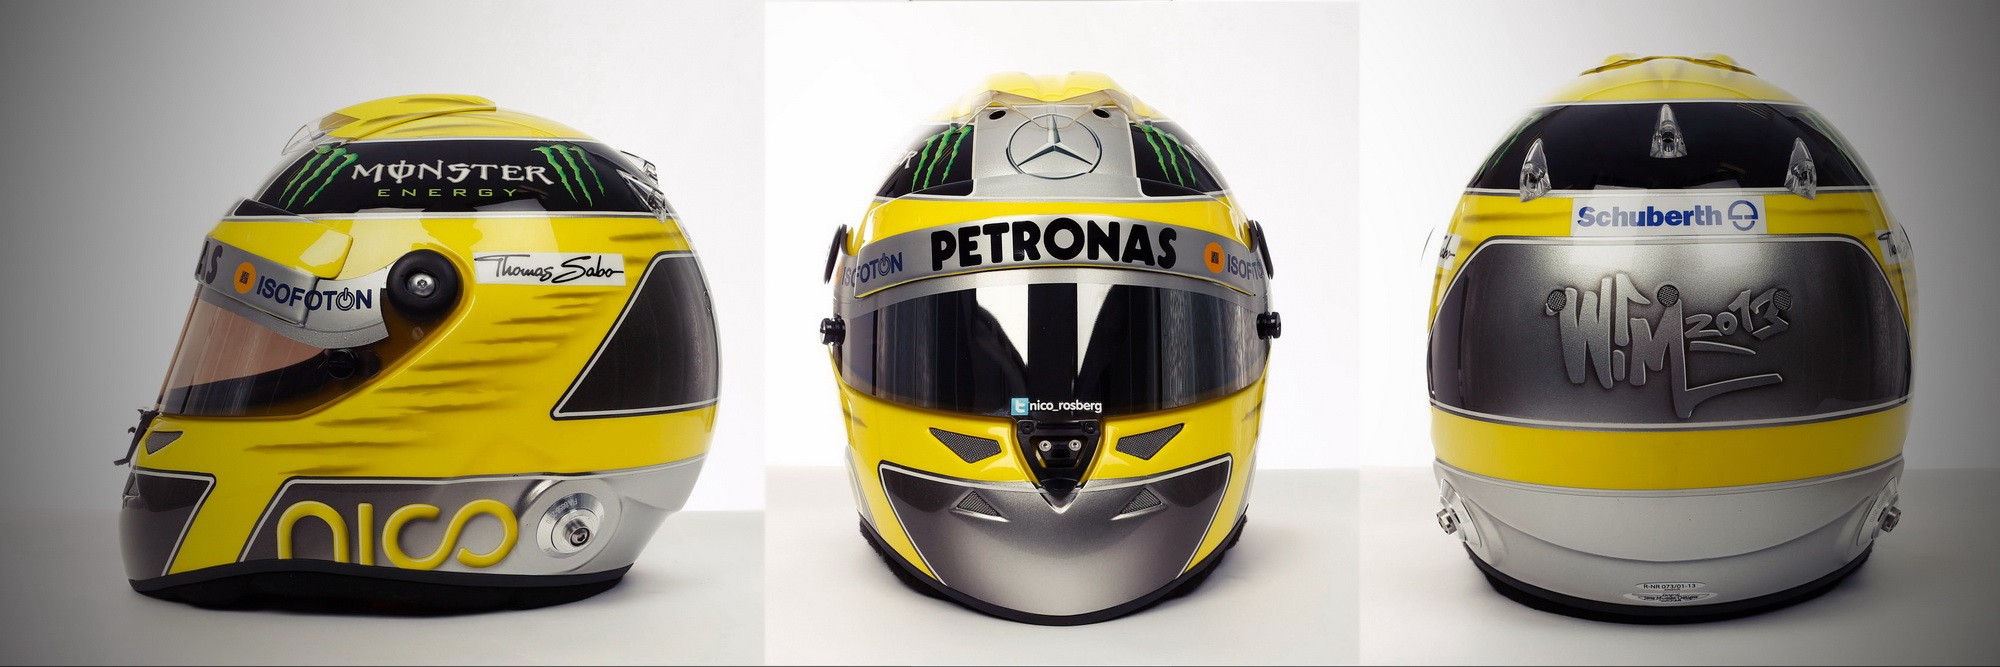 Шлем Нико Росберга на сезон 2013 года | 2013 helmet of Nico Rosberg